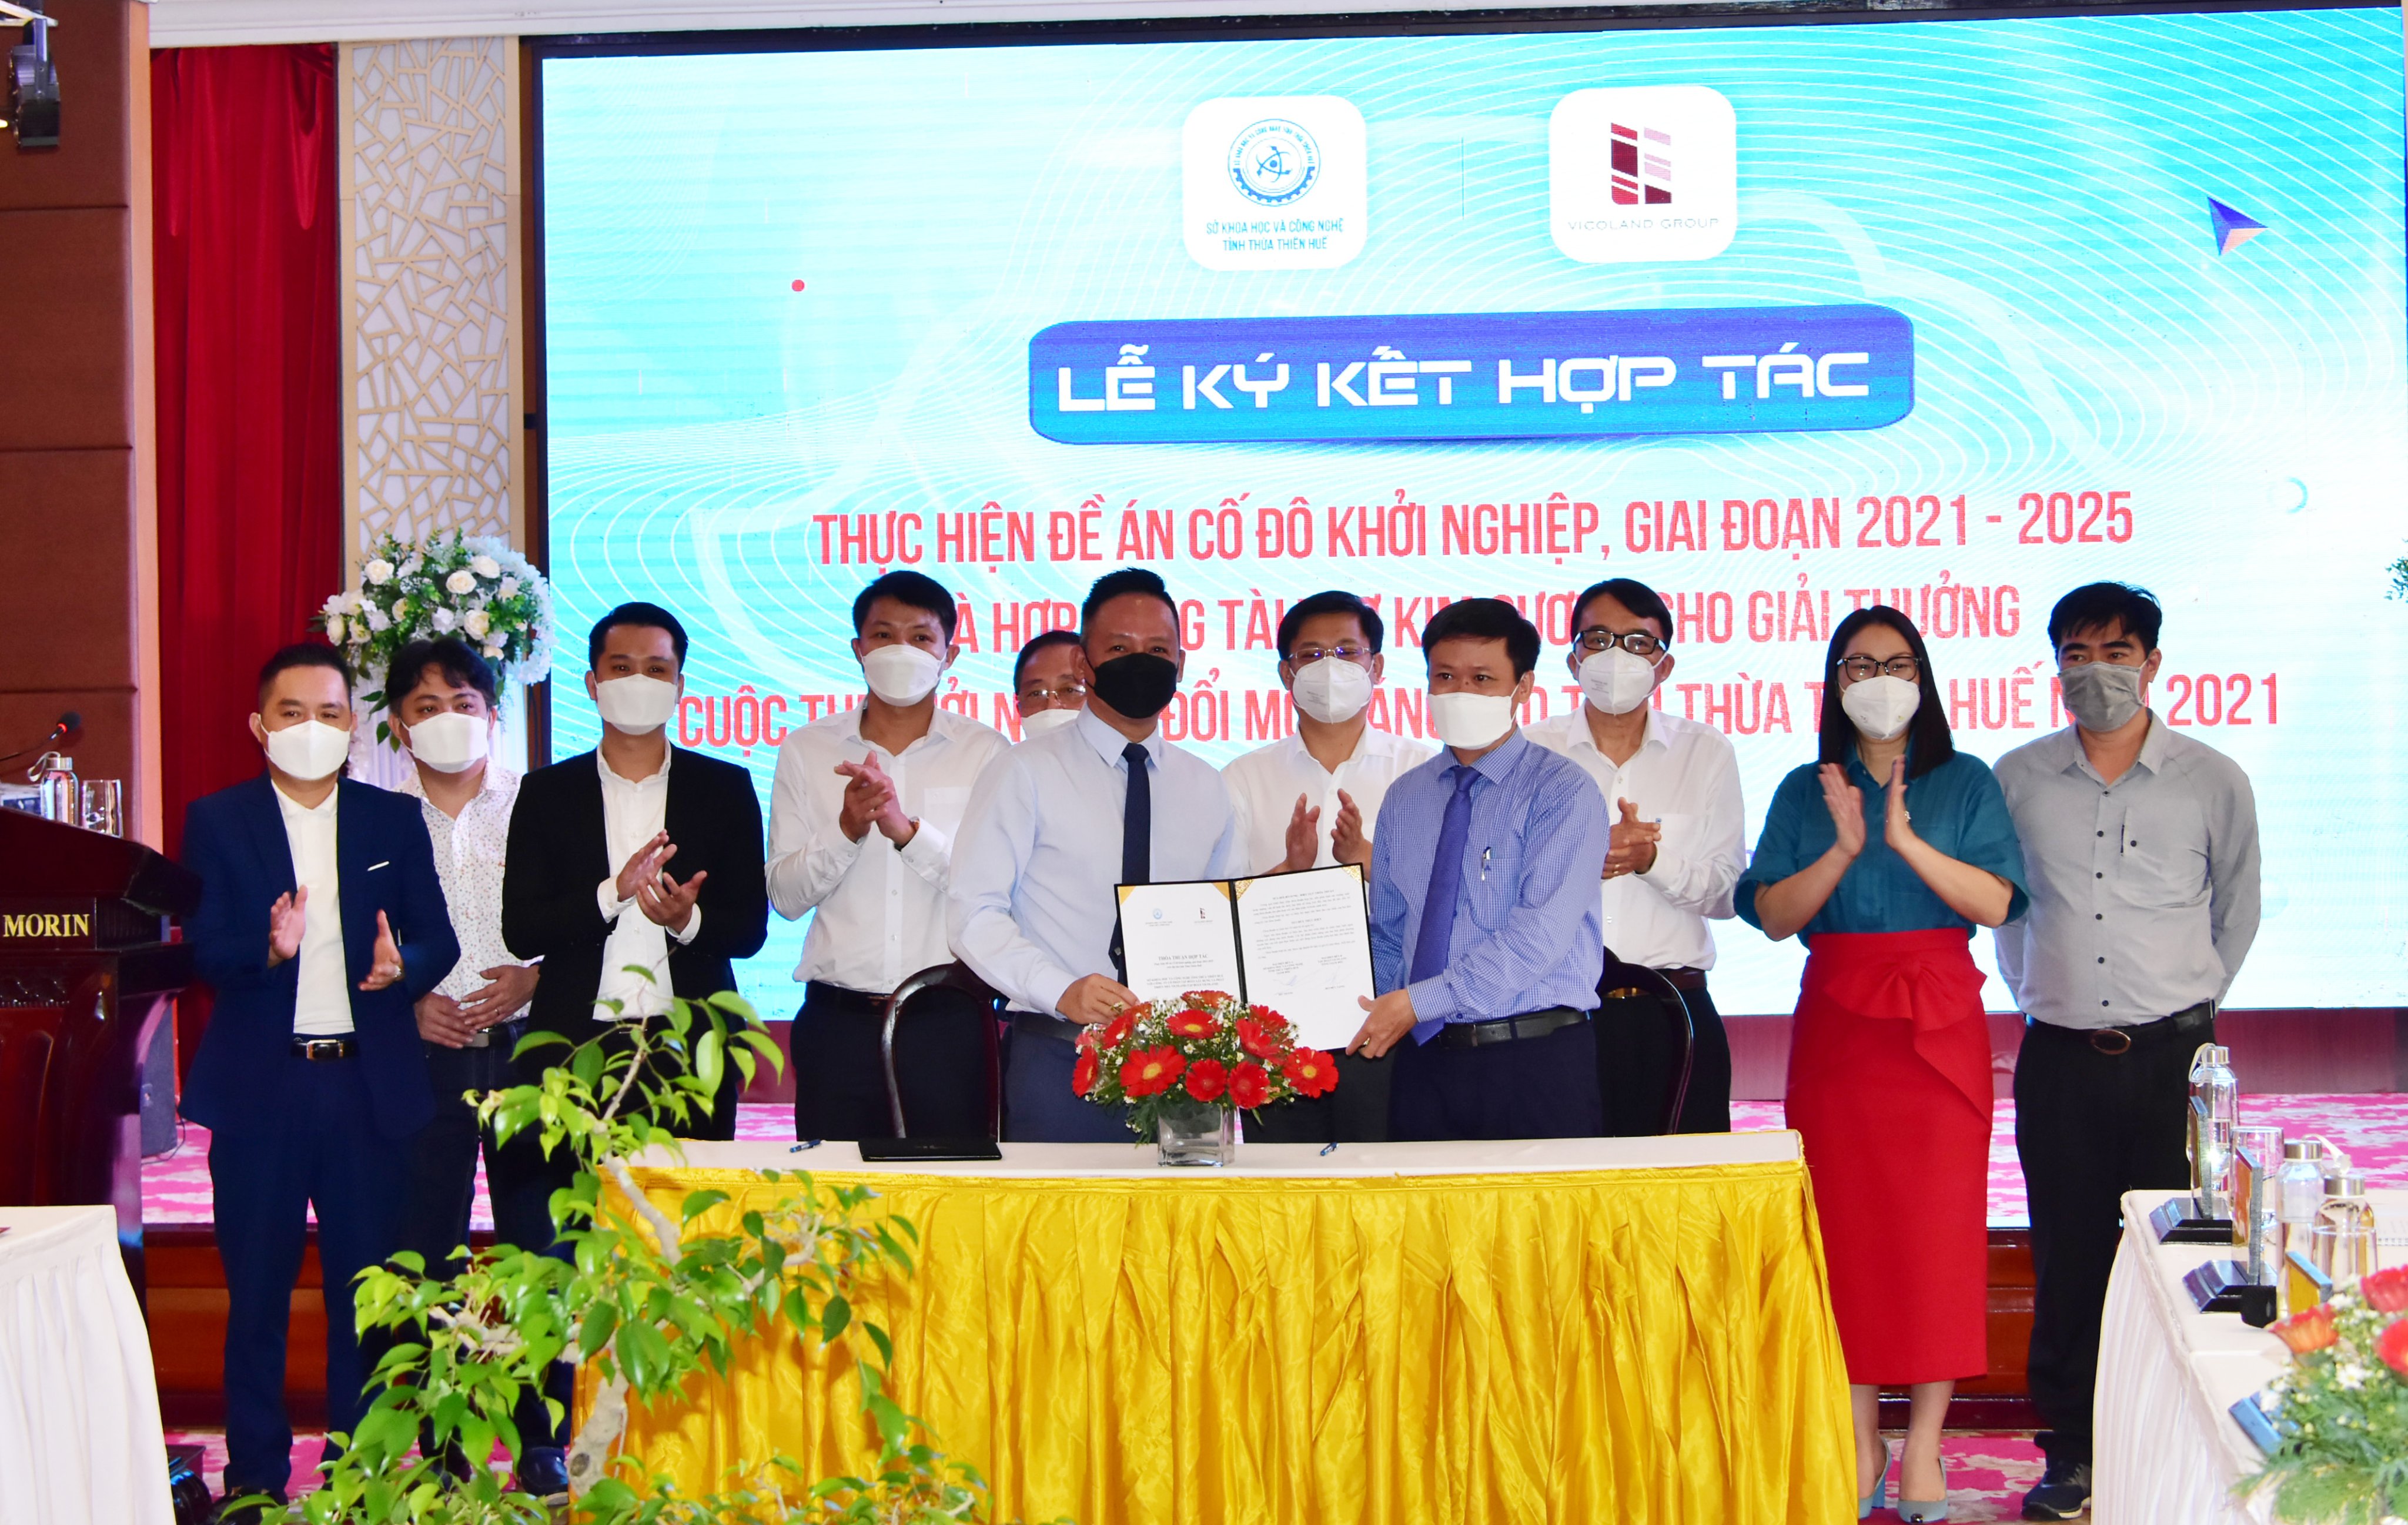 Ông Hồ Thắng - Giám đốc Sở KH&CN và ông Bùi Đức Lợi - Chủ tịch Tập đoàn Vicoland ký kết hợp tác thực hiện Đề án Cố đô Khởi nghiệp, giai đoạn 2021-2025 trên địa bàn tỉnh Thừa Thiên Huế. | Ảnh: BTC